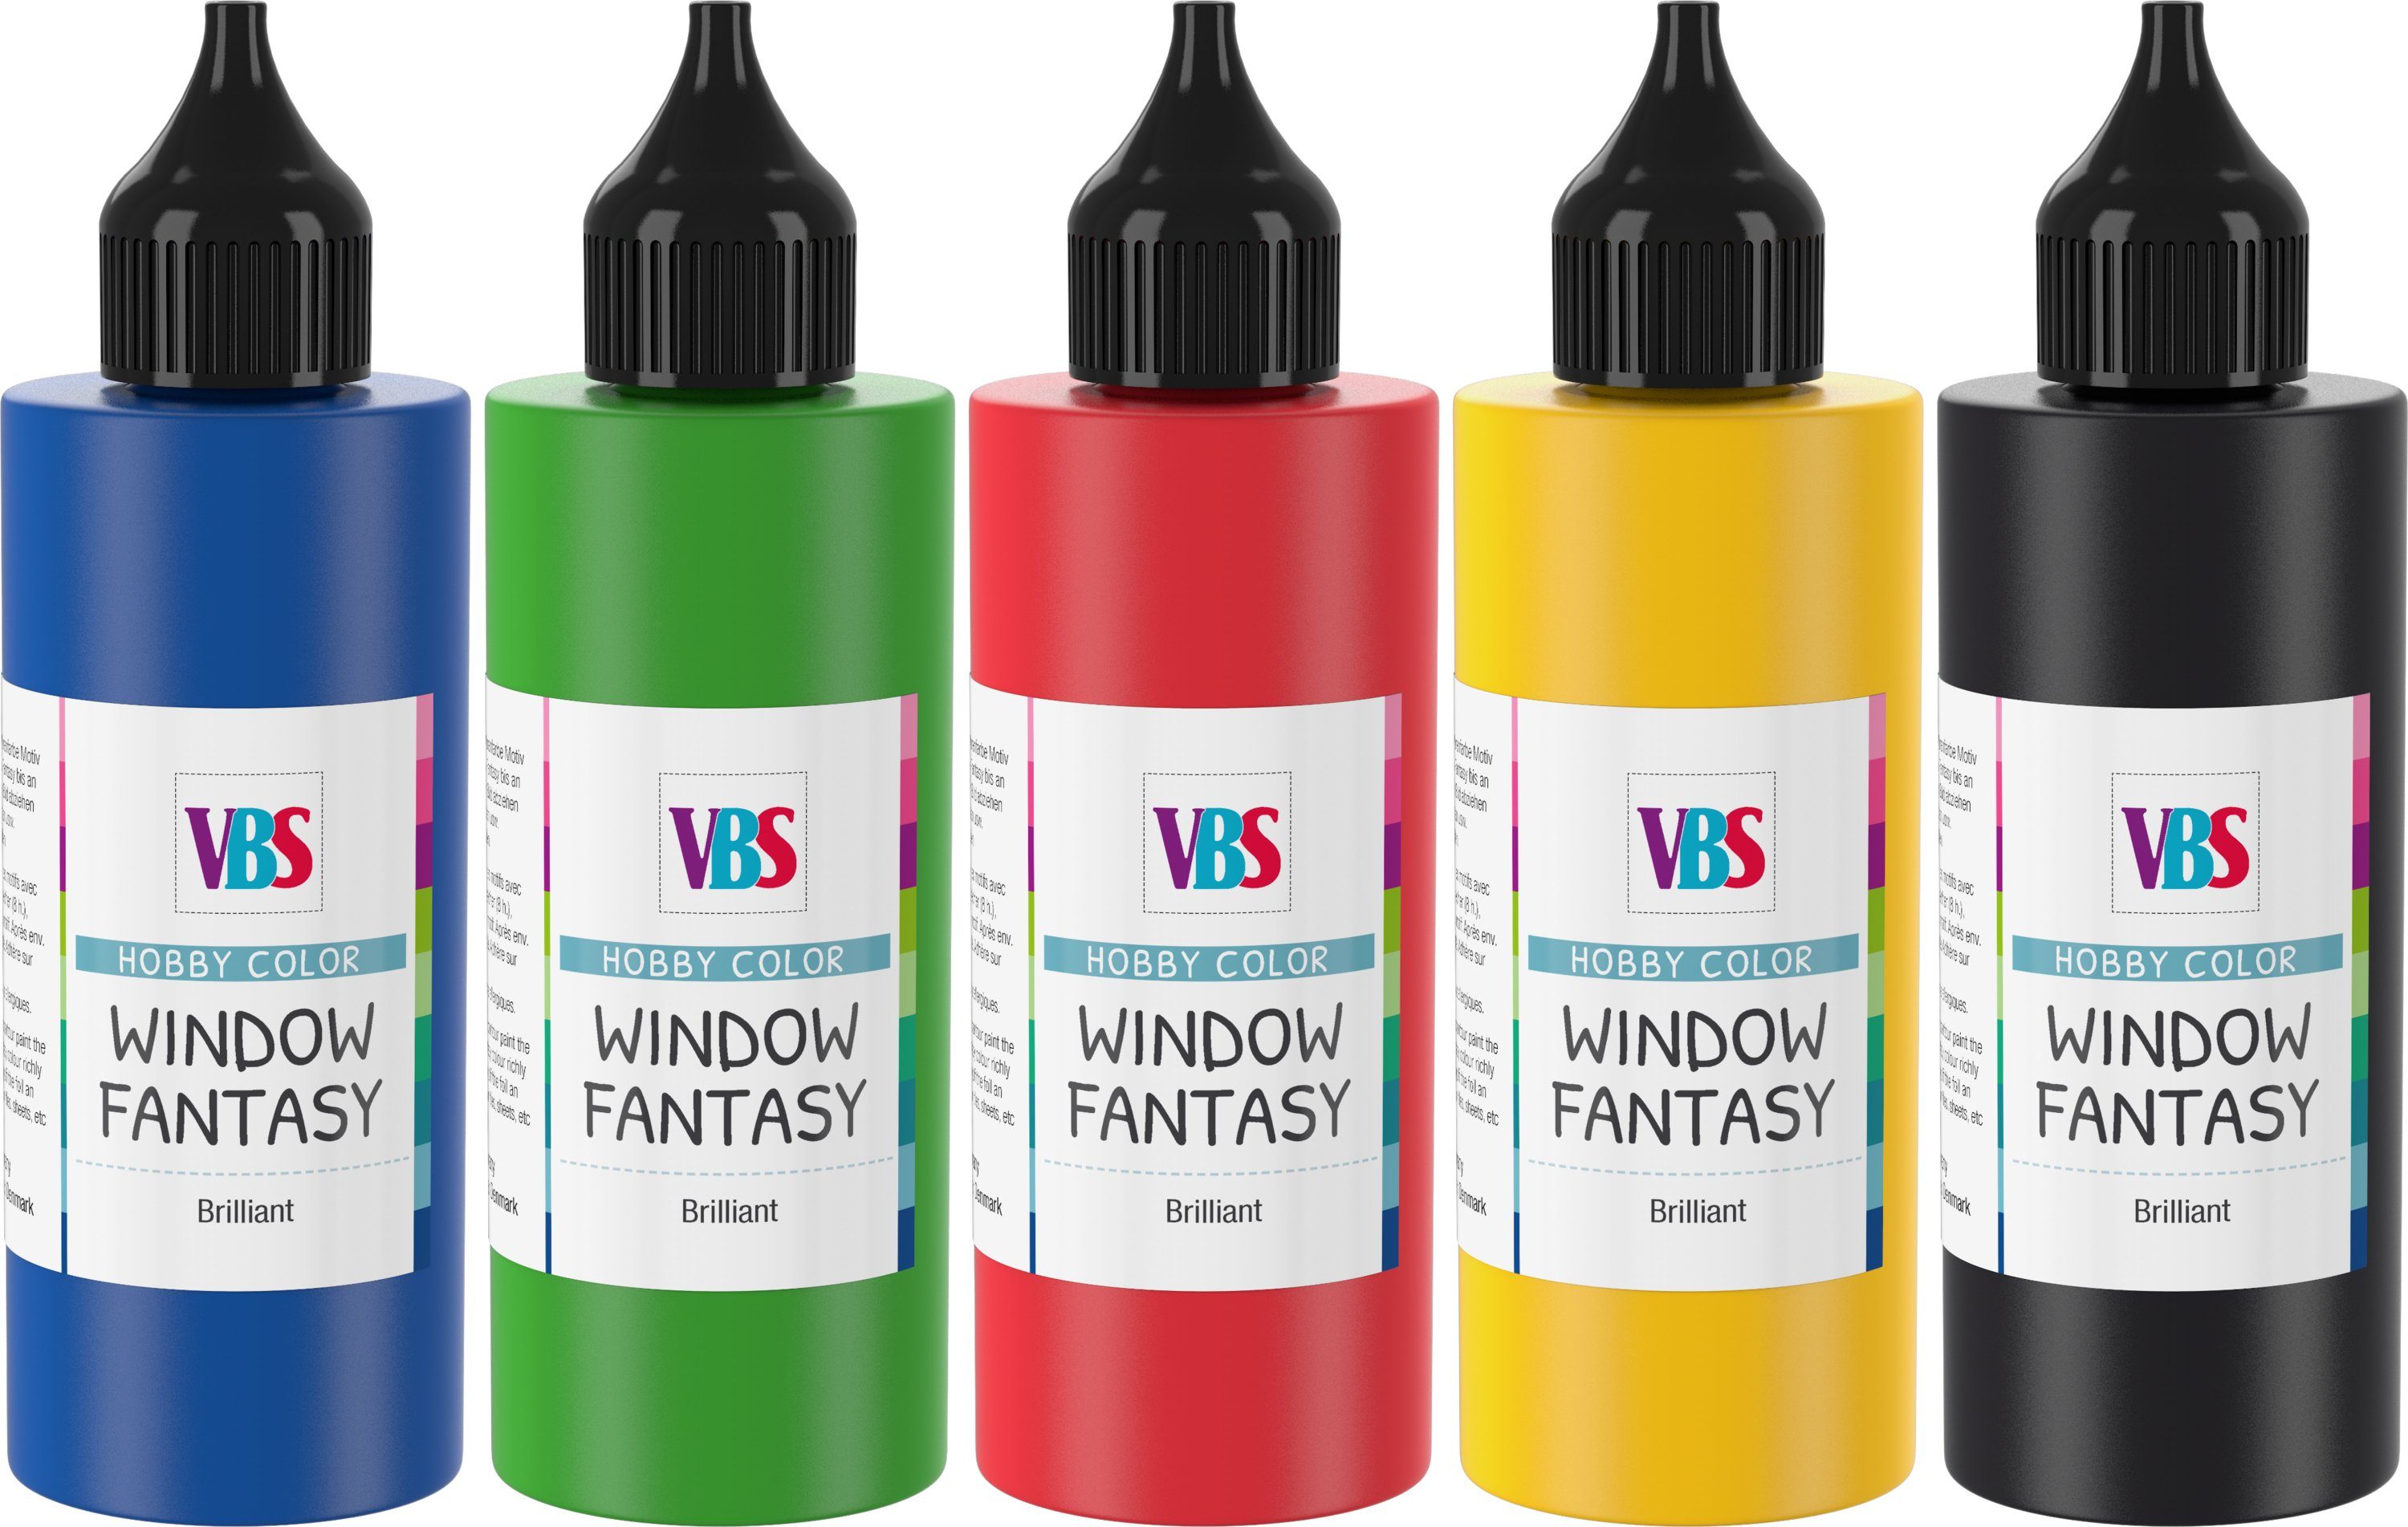 Fenstersticker Window Fantasy Basic-Set, VBS, 5 Stück | Sticker